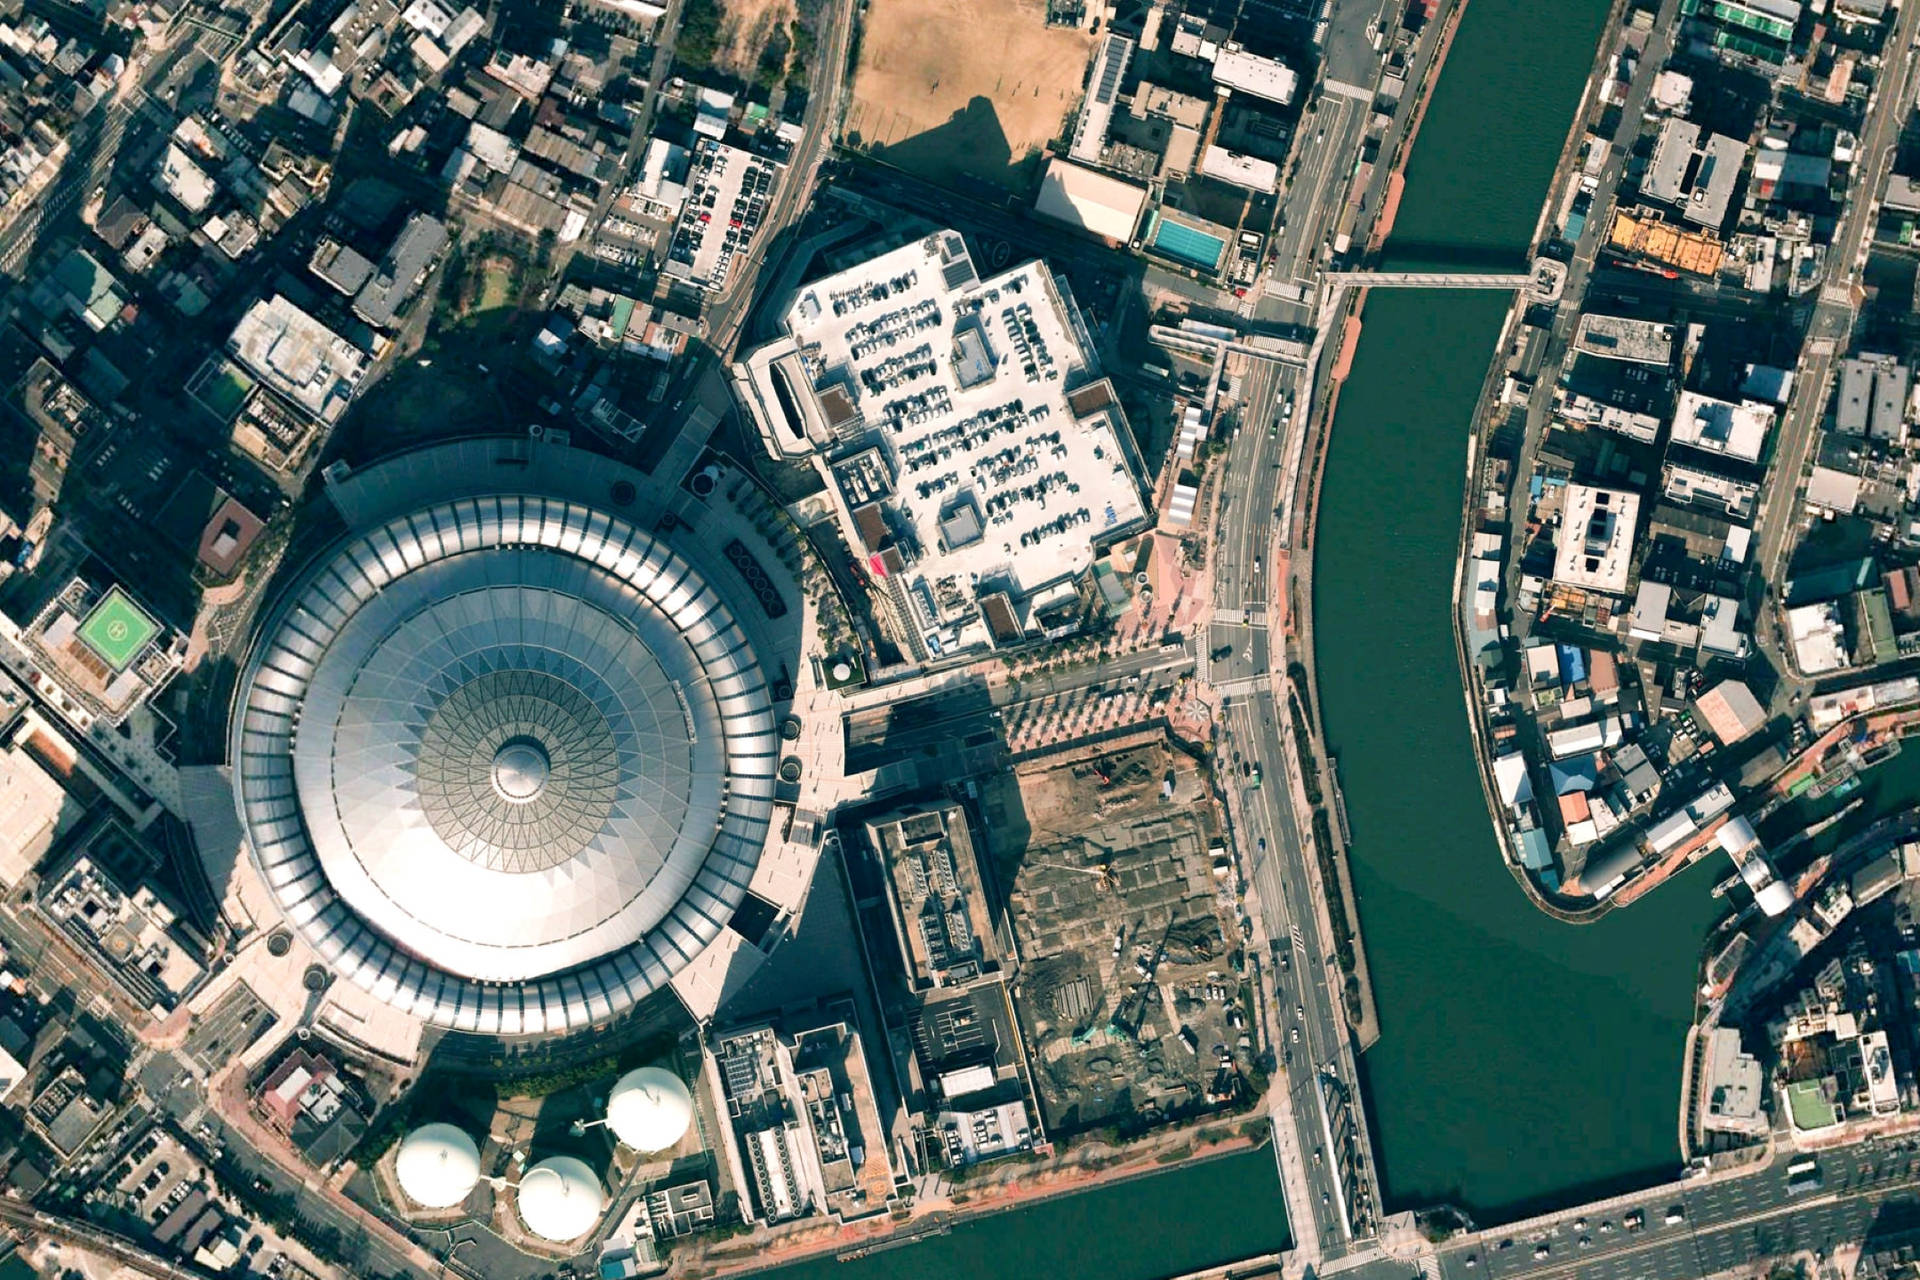 Google Earth Kyocera Dome Osaka